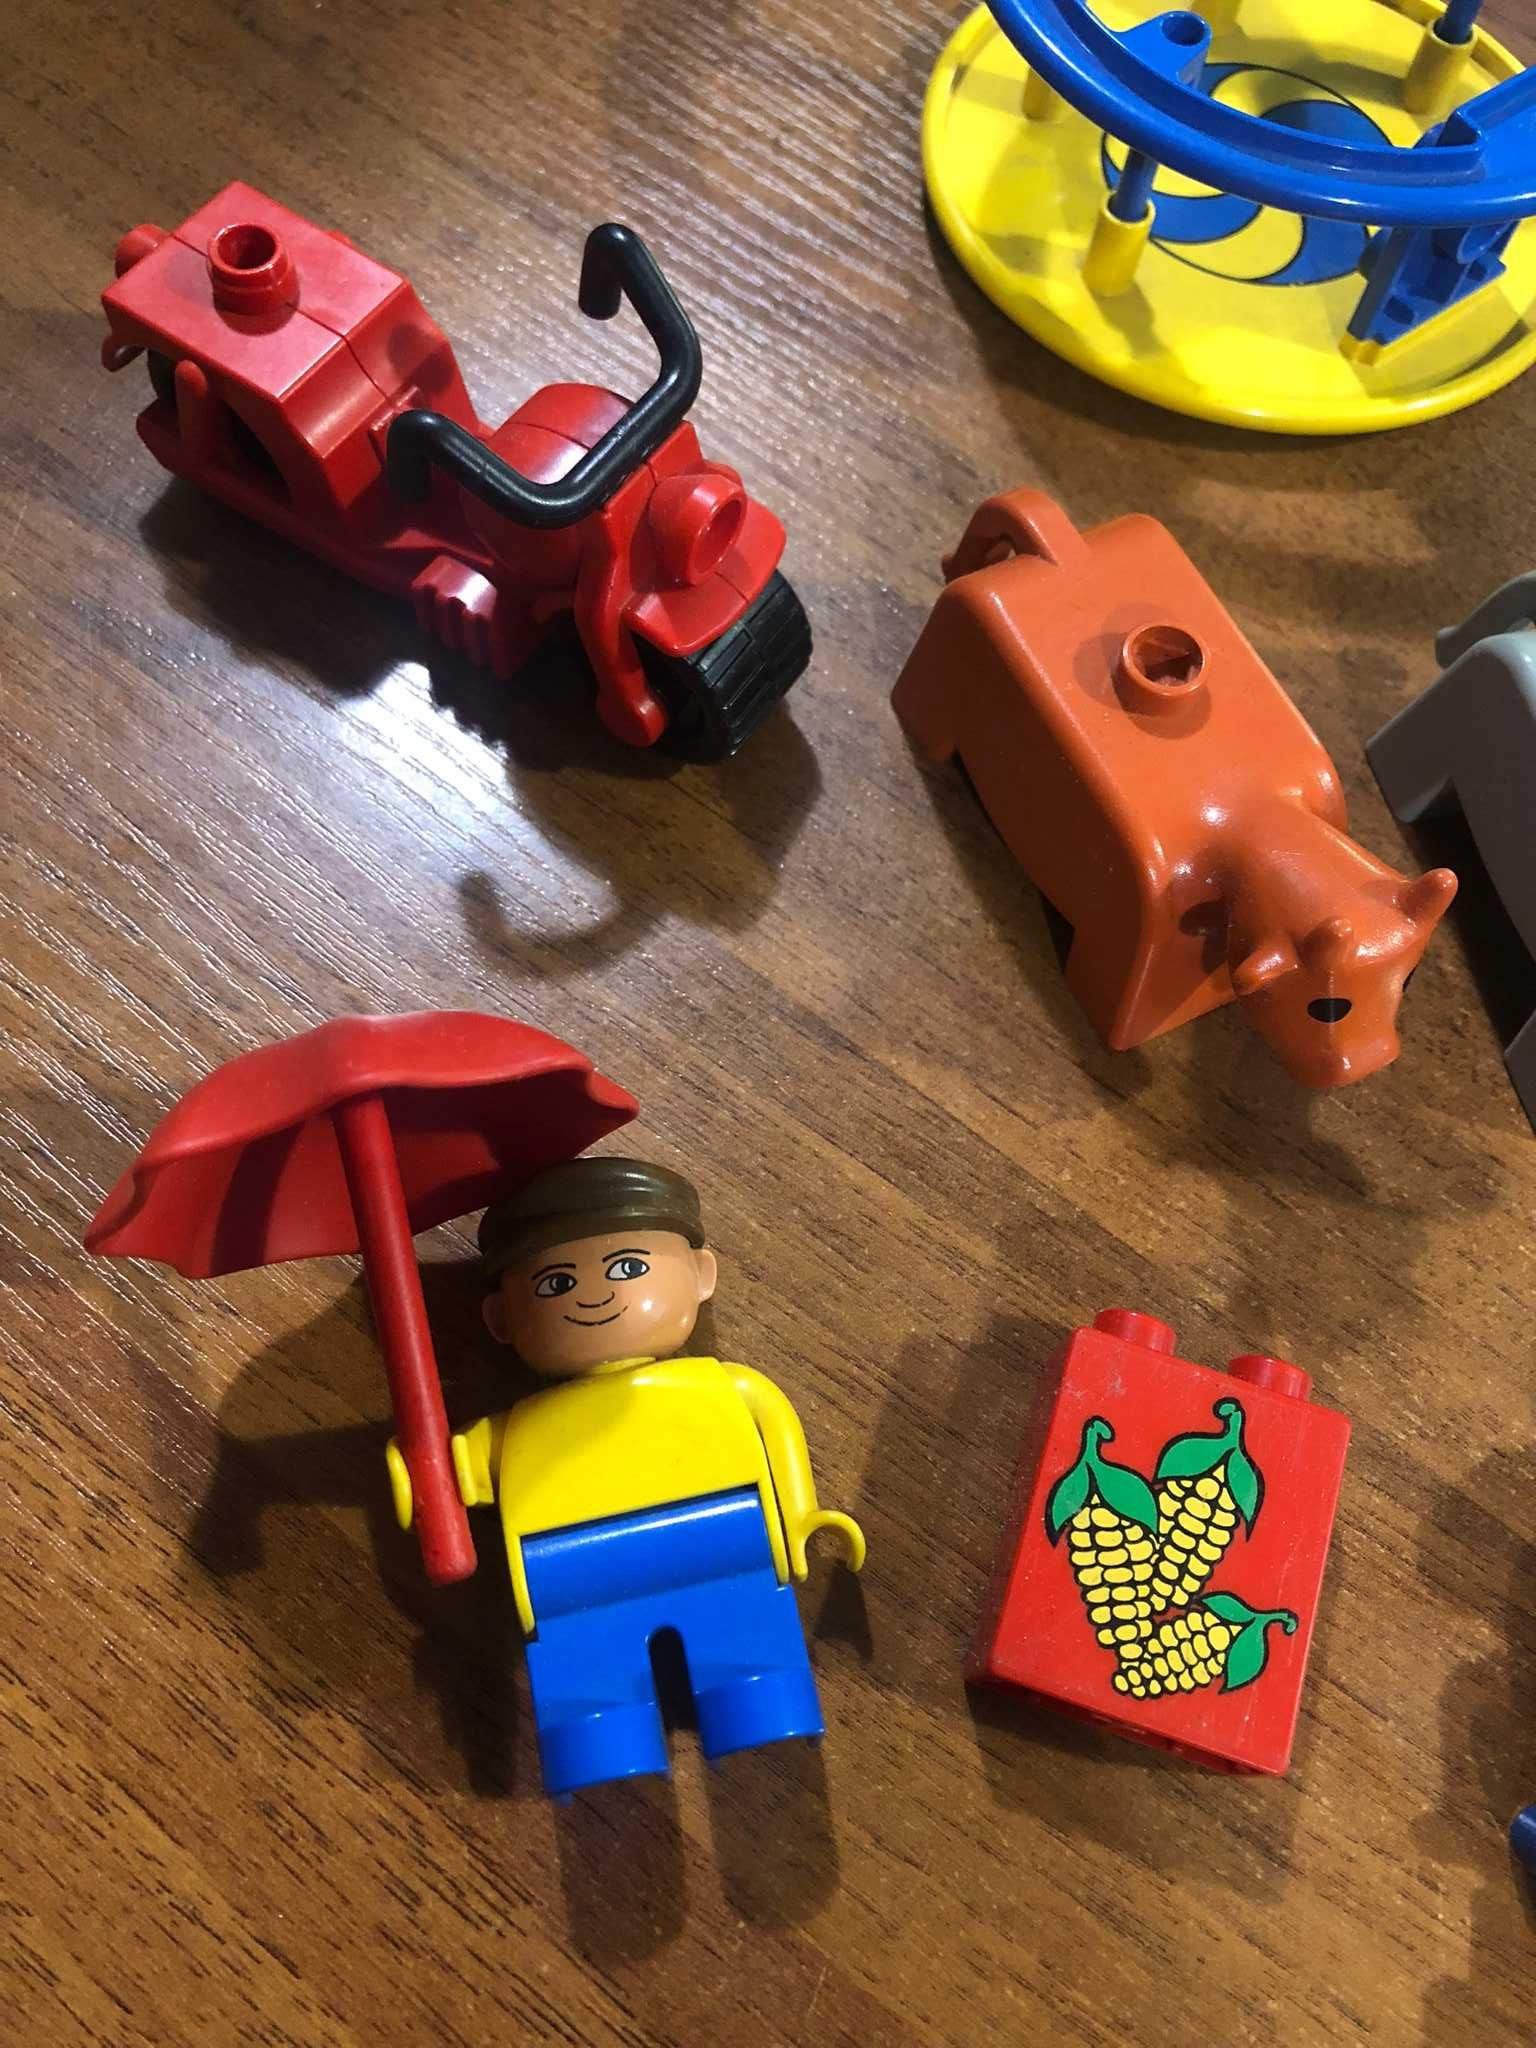 Lego Duplo - Farma zwierzątka i figurki - lata 80-90 klasyka